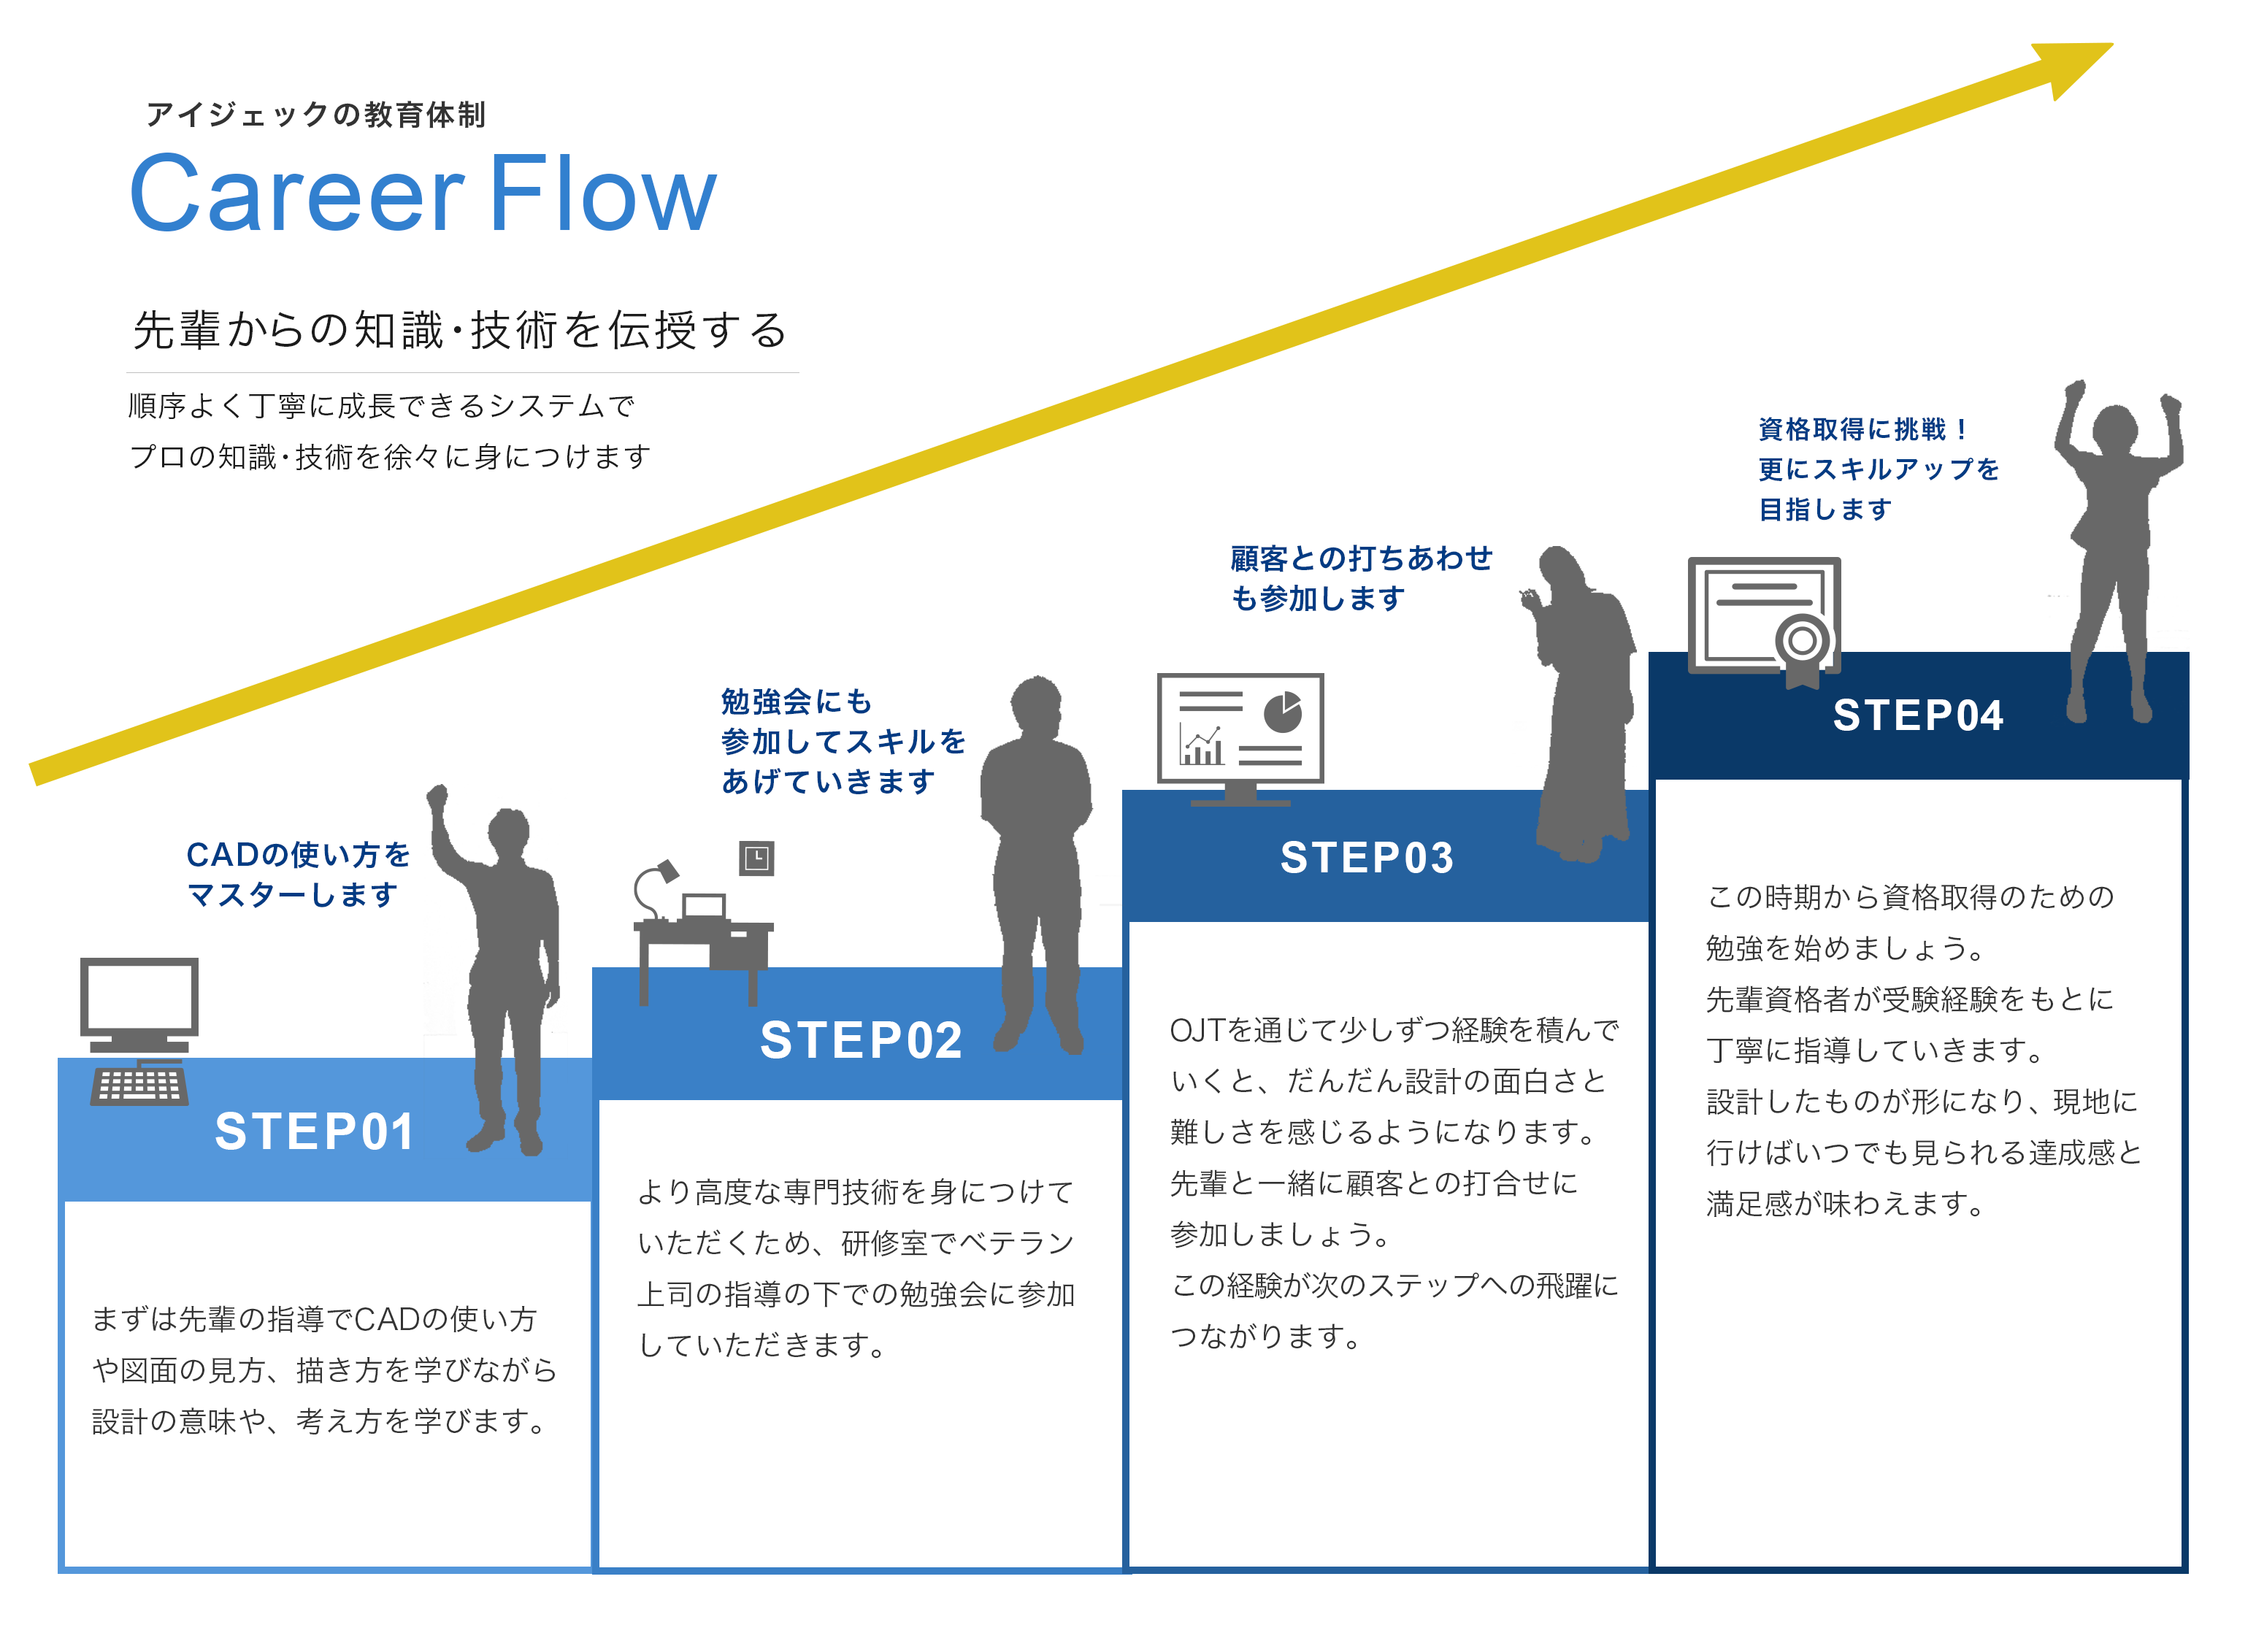 Career Flow